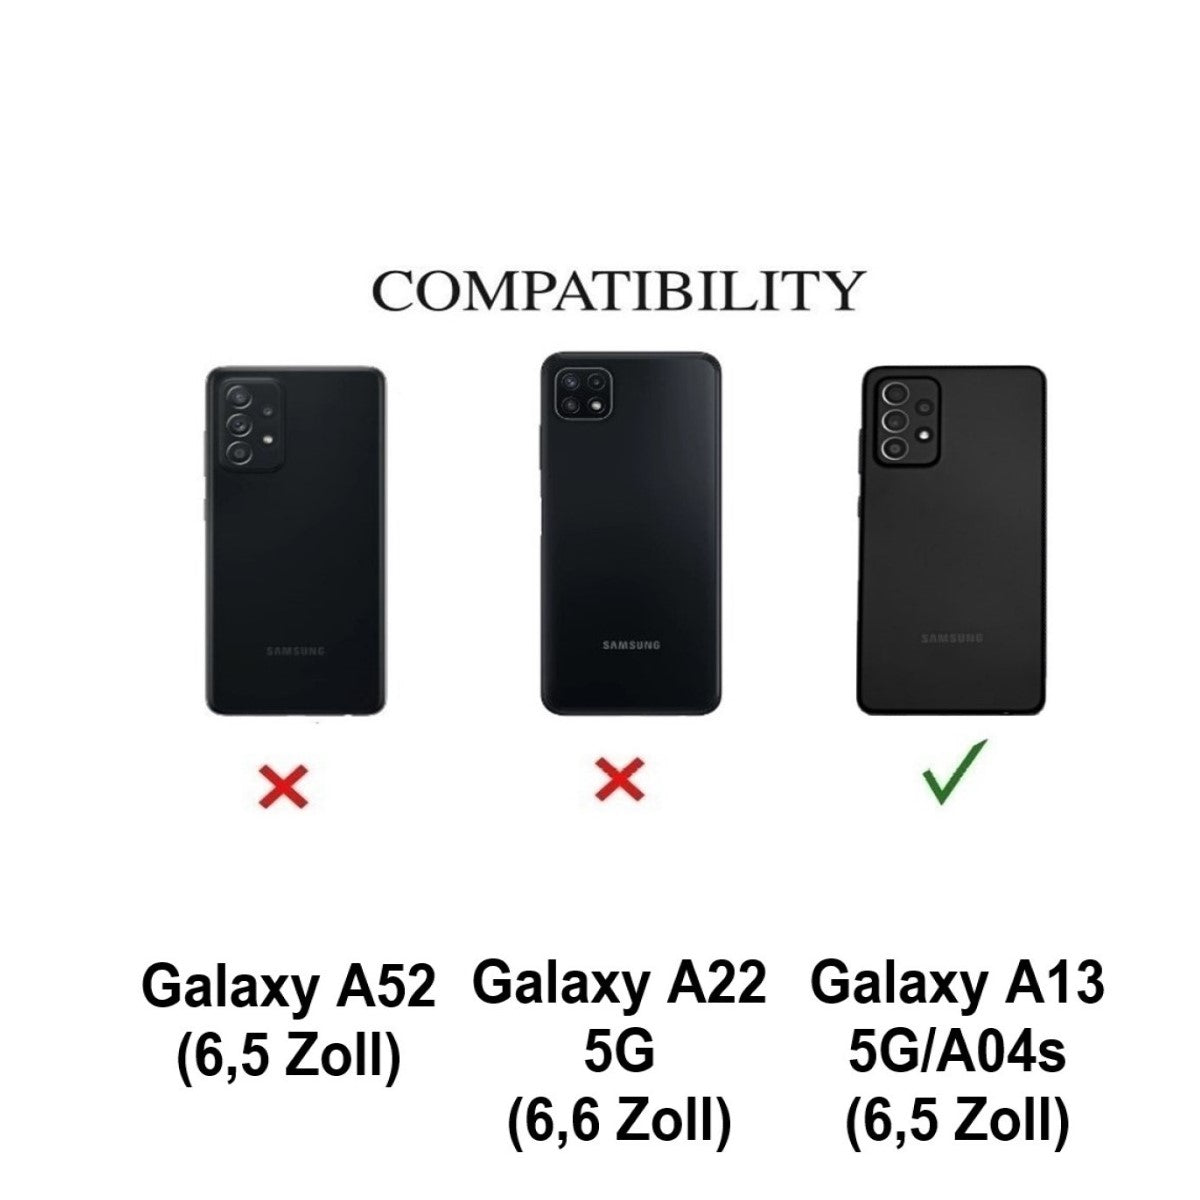 Hülle für Samsung Galaxy A13 5G/A04s Handyhülle Silikon Cover Case Etui klar